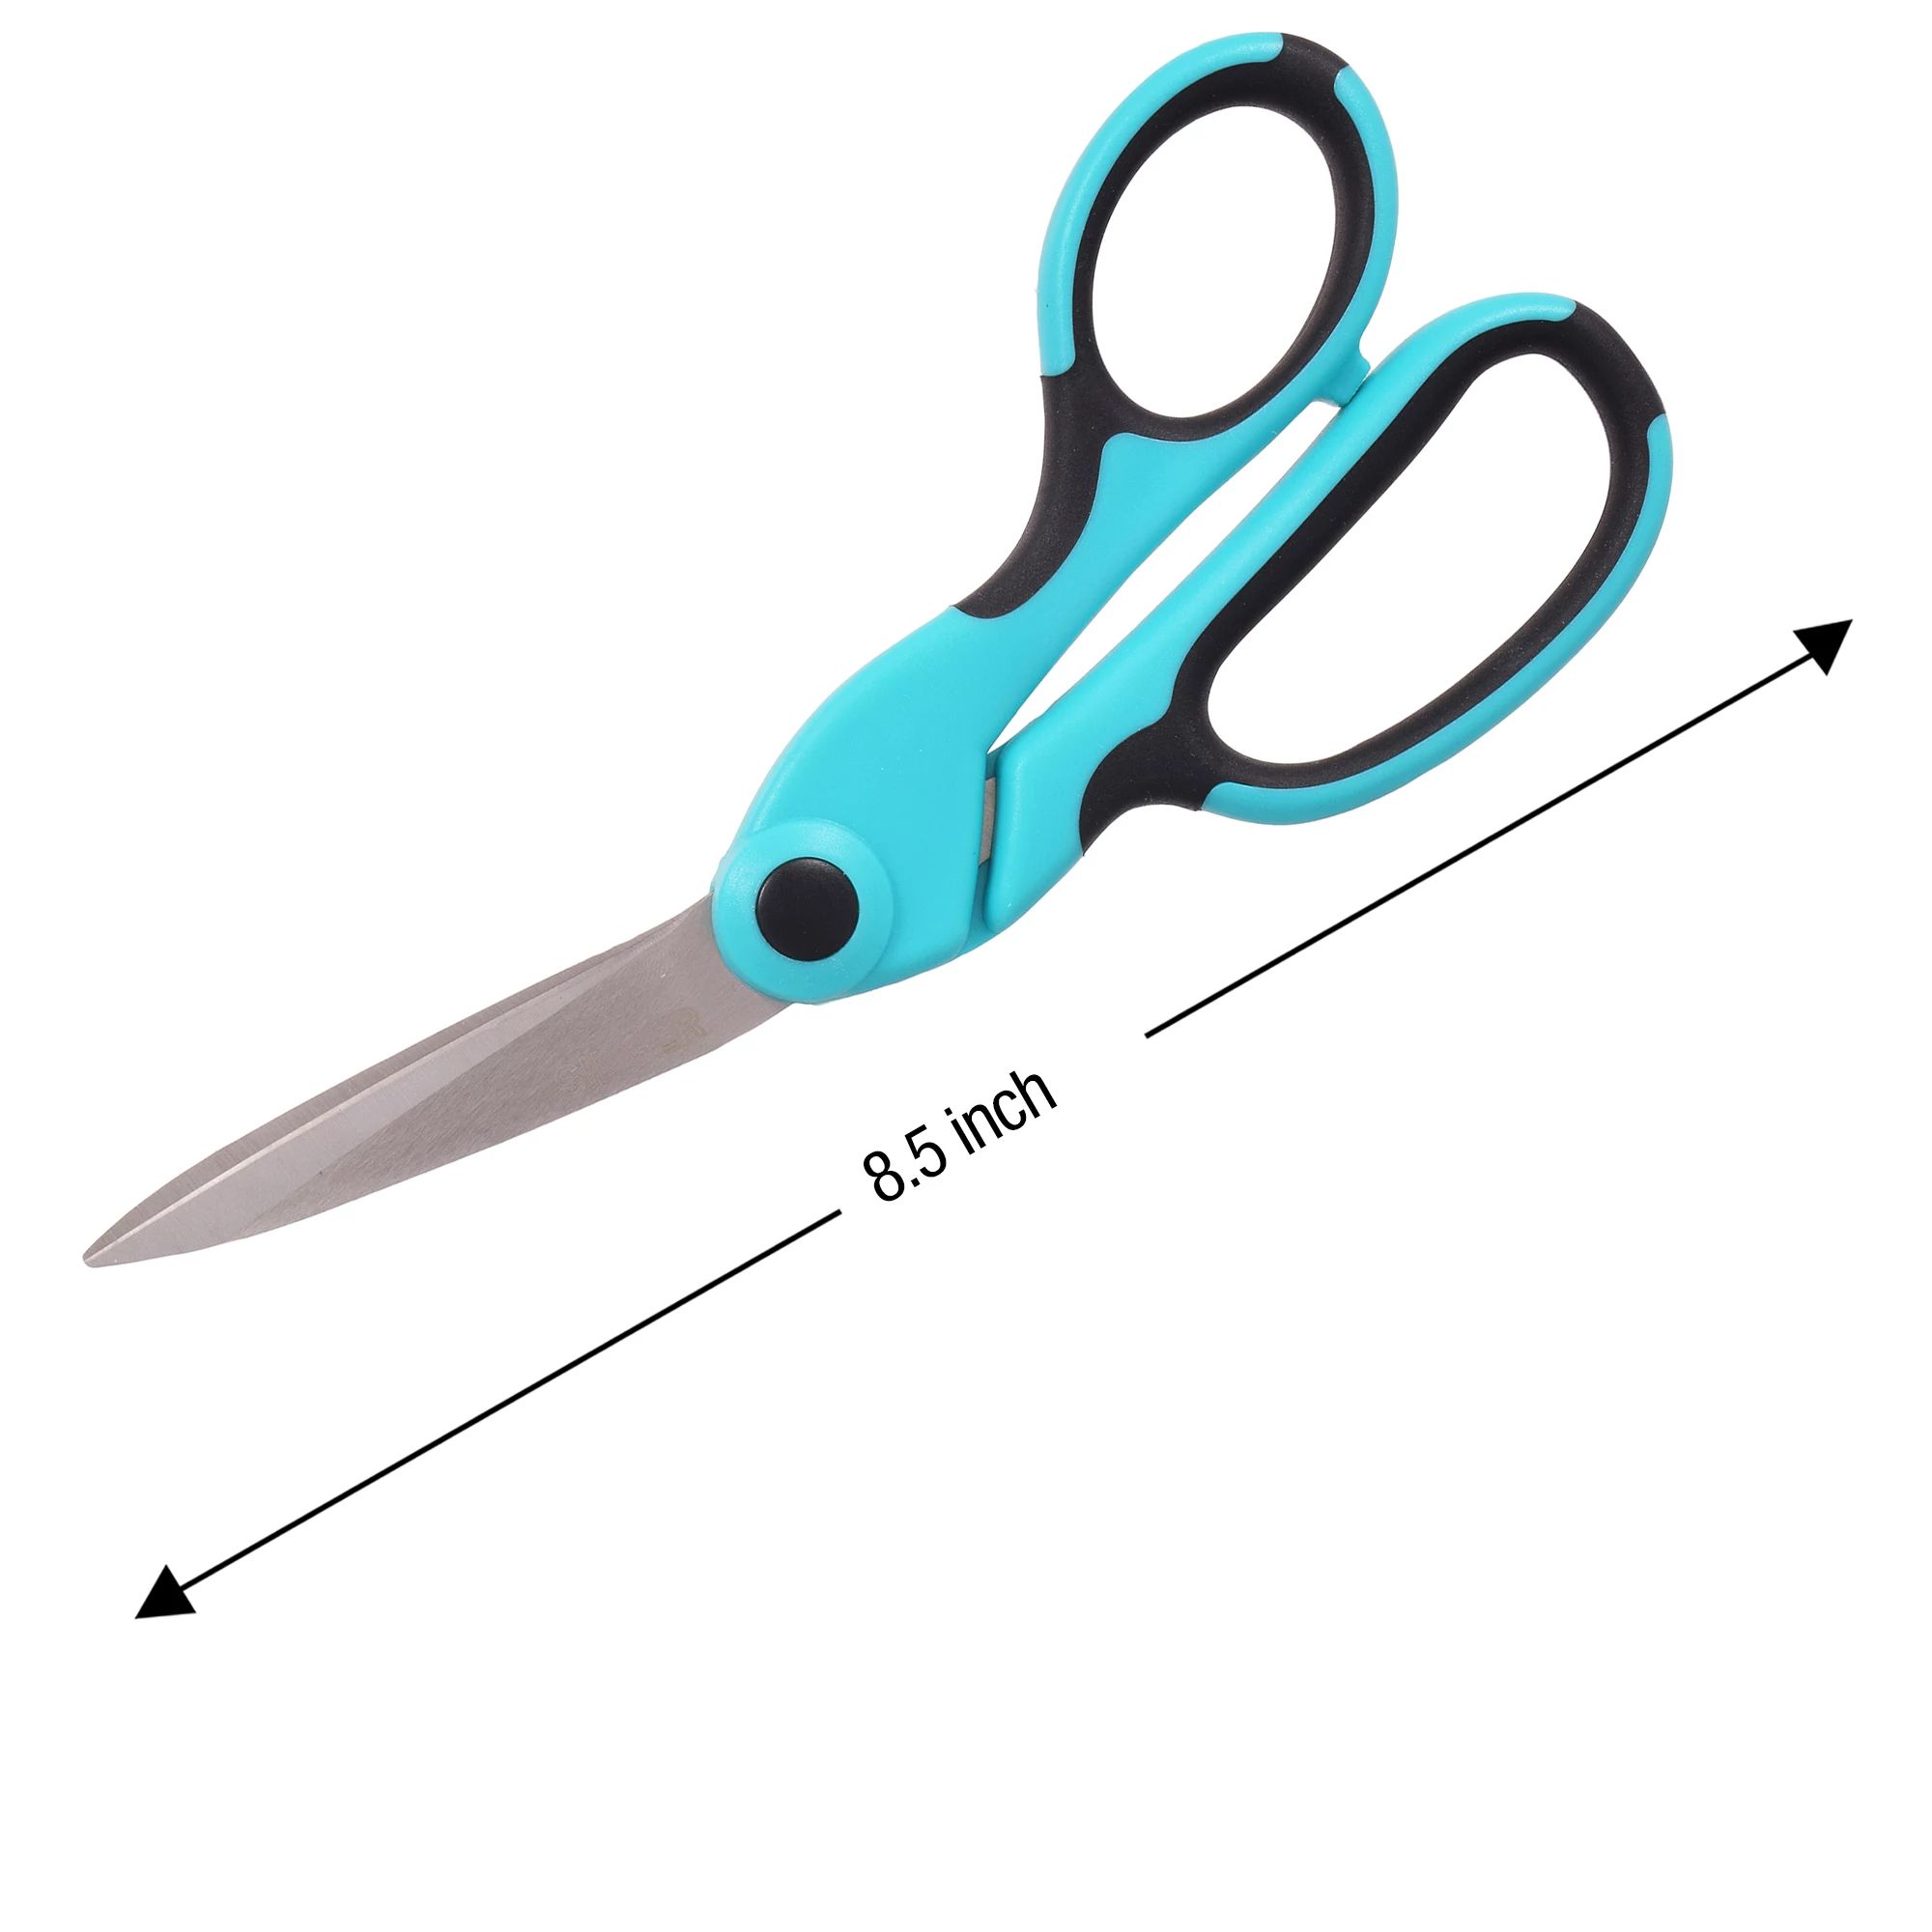 Allary All-Purpose 8.5 Fabric Scissors